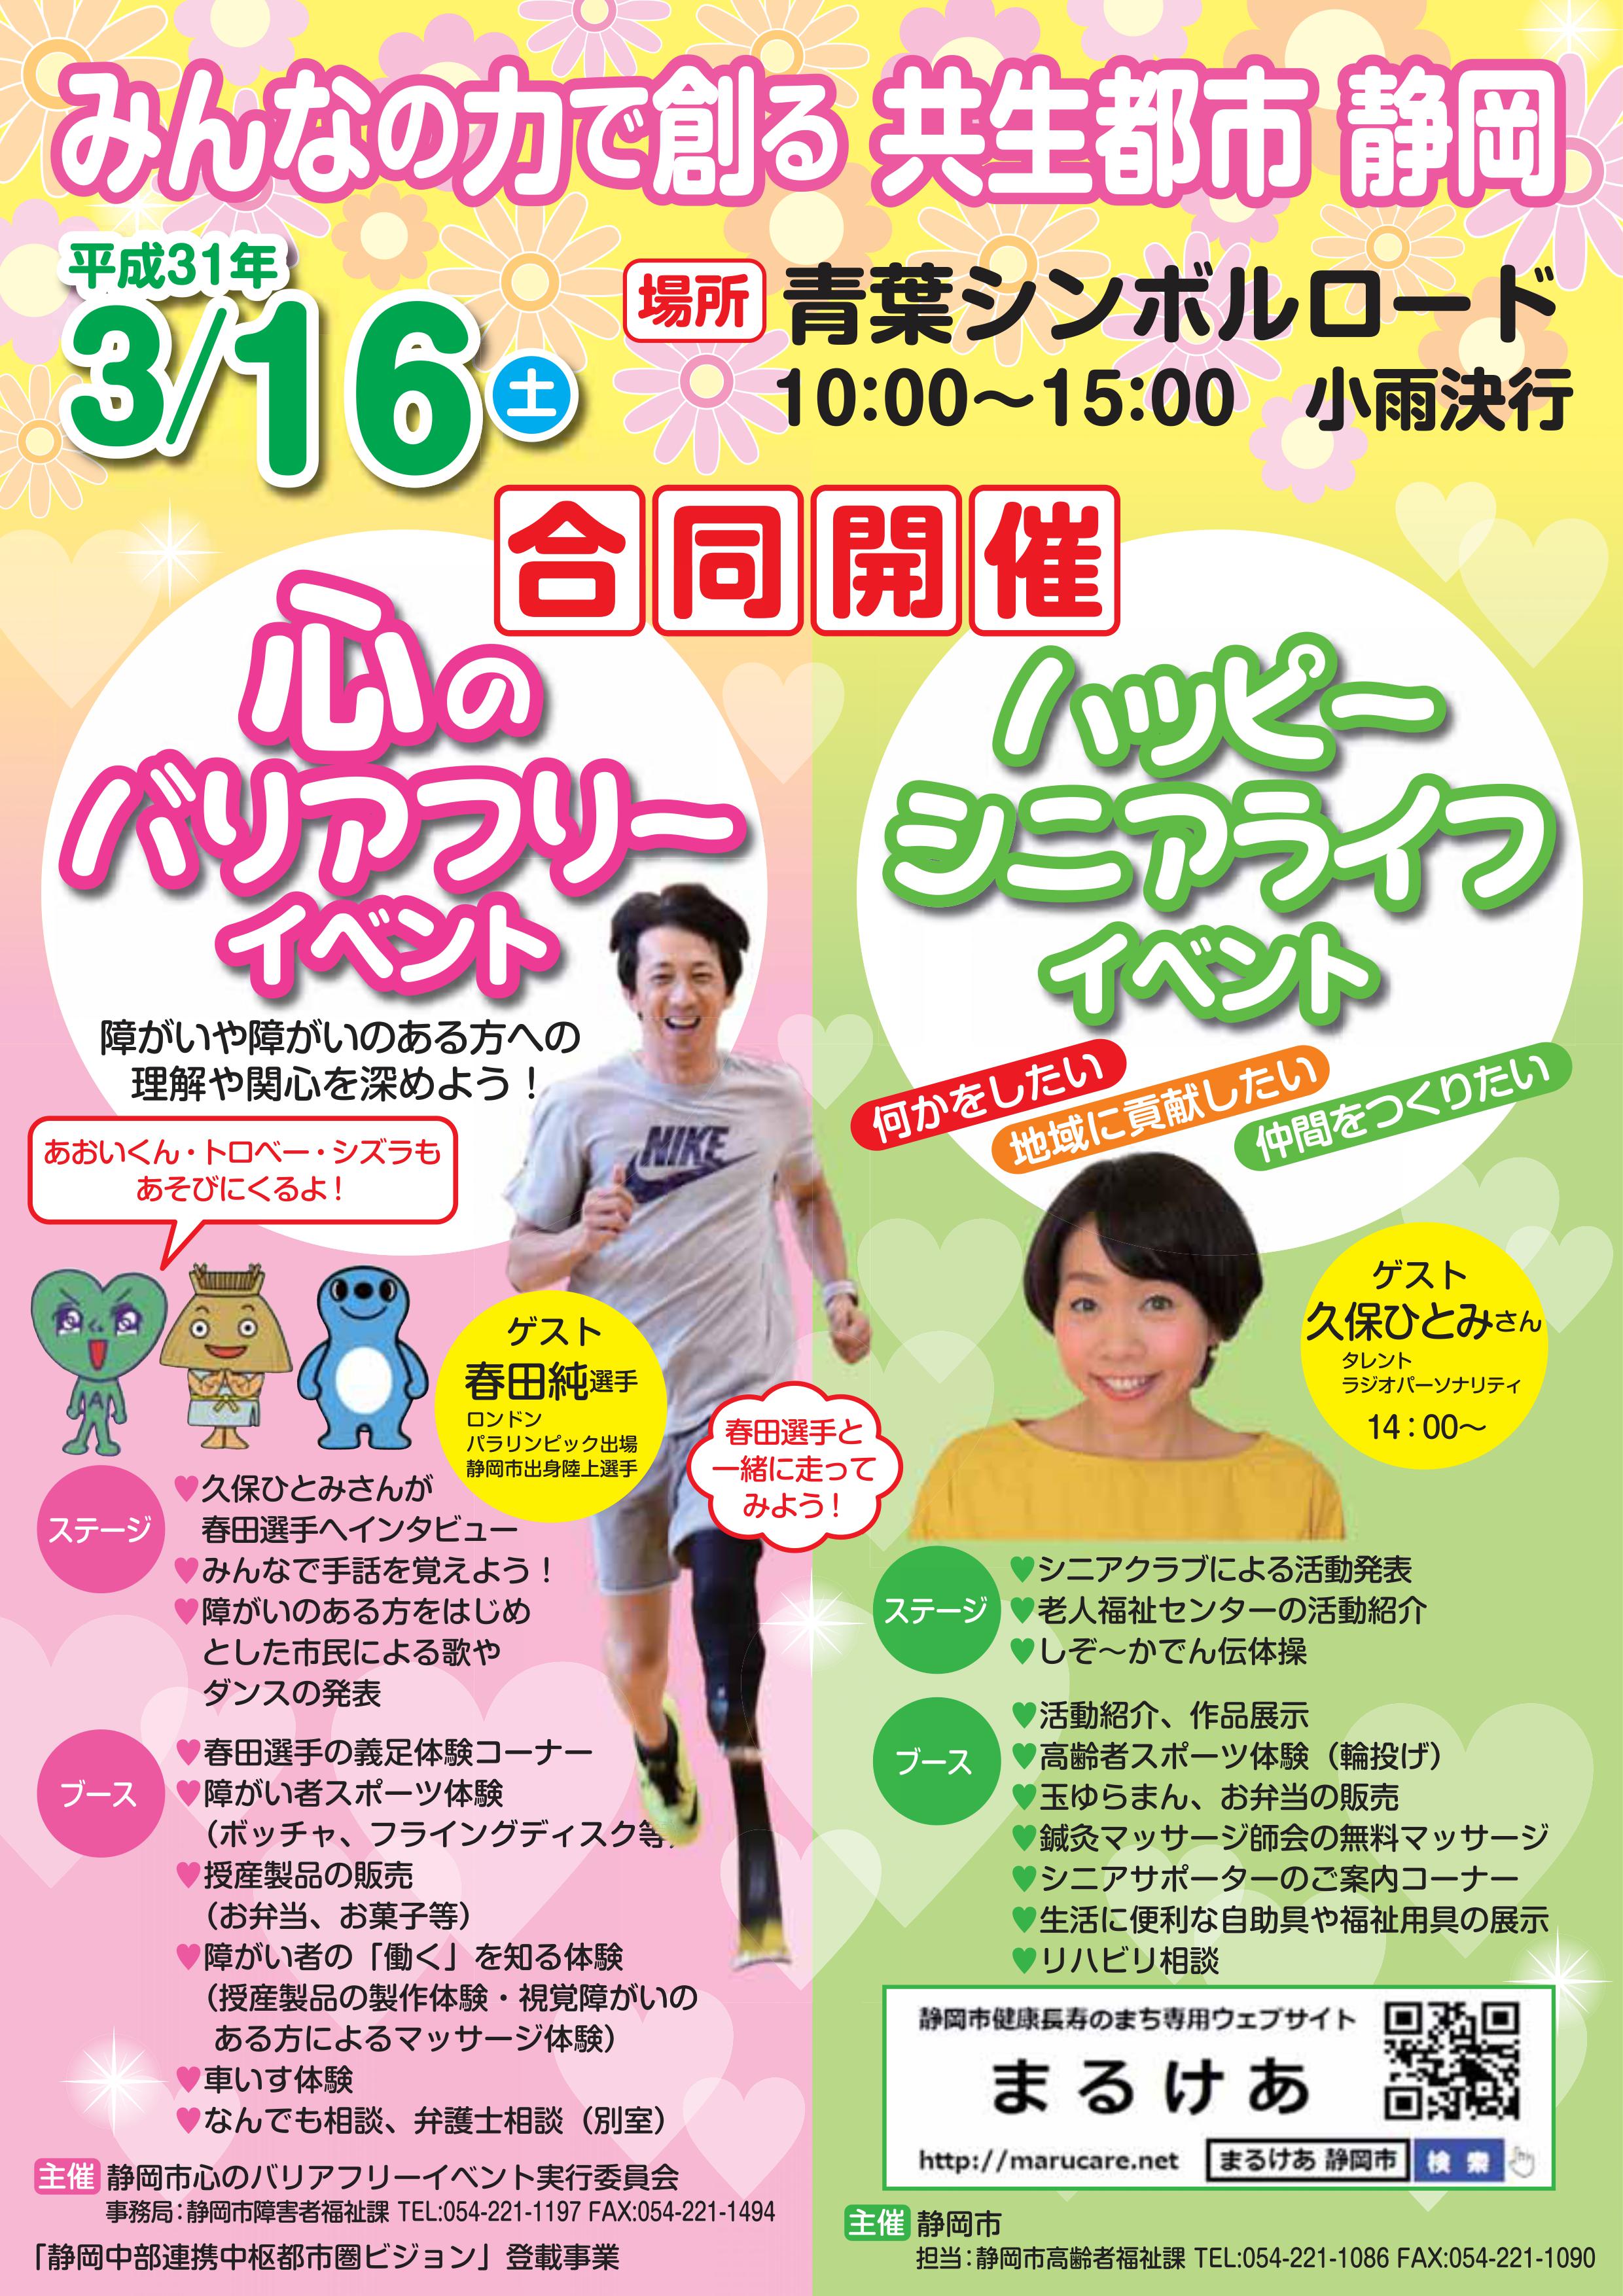 心のバリアフリーイベント - 静岡青葉シンボルロードイベント2021情報